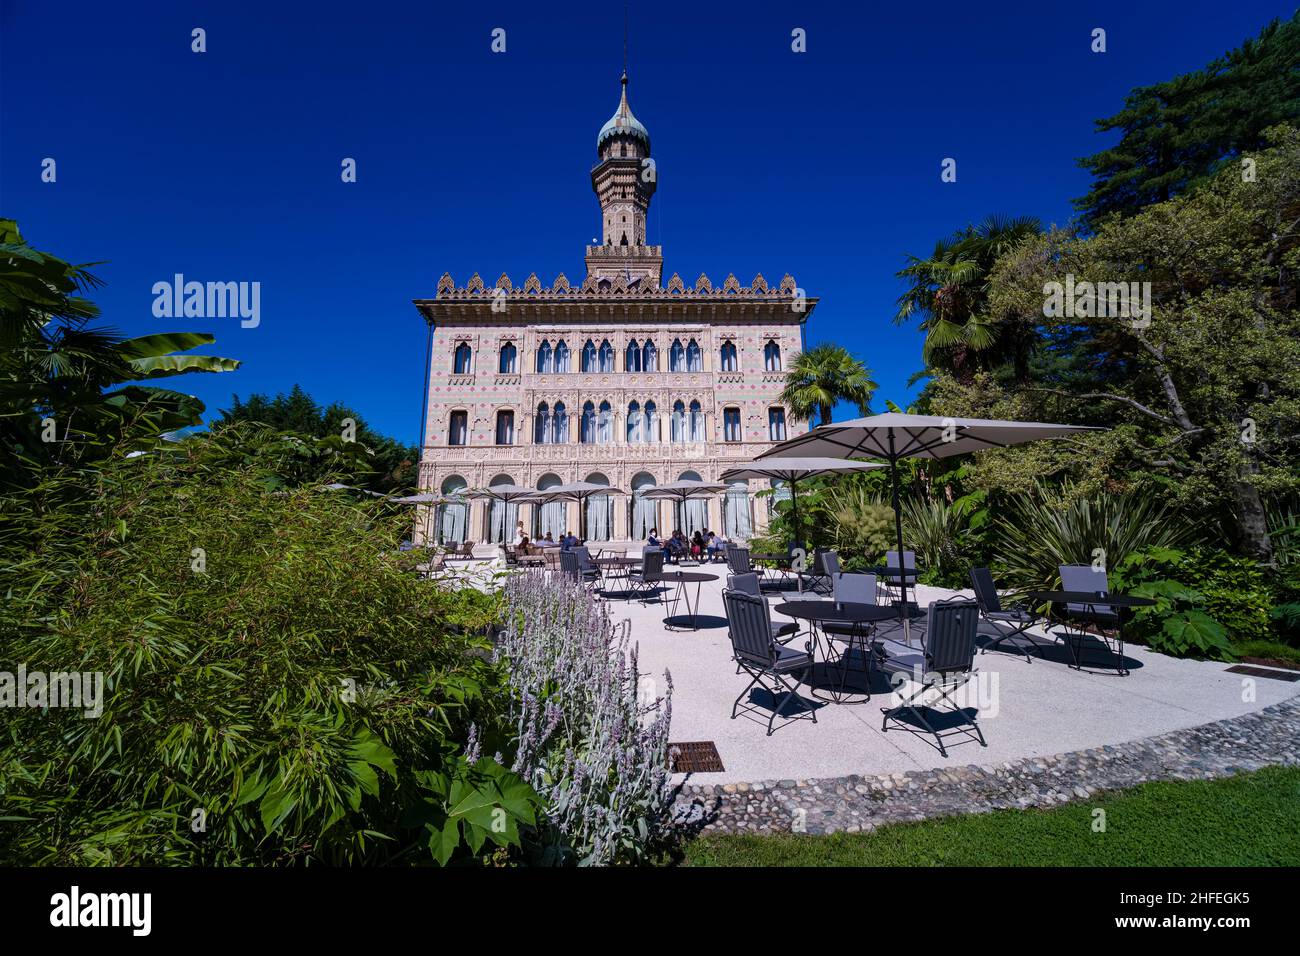 Das Relais & Chateaux Villa Crespi, ein arabisches, prächtiges Gebäude, wurde 1879 erbaut und ist heute ein Restaurant. Stockfoto